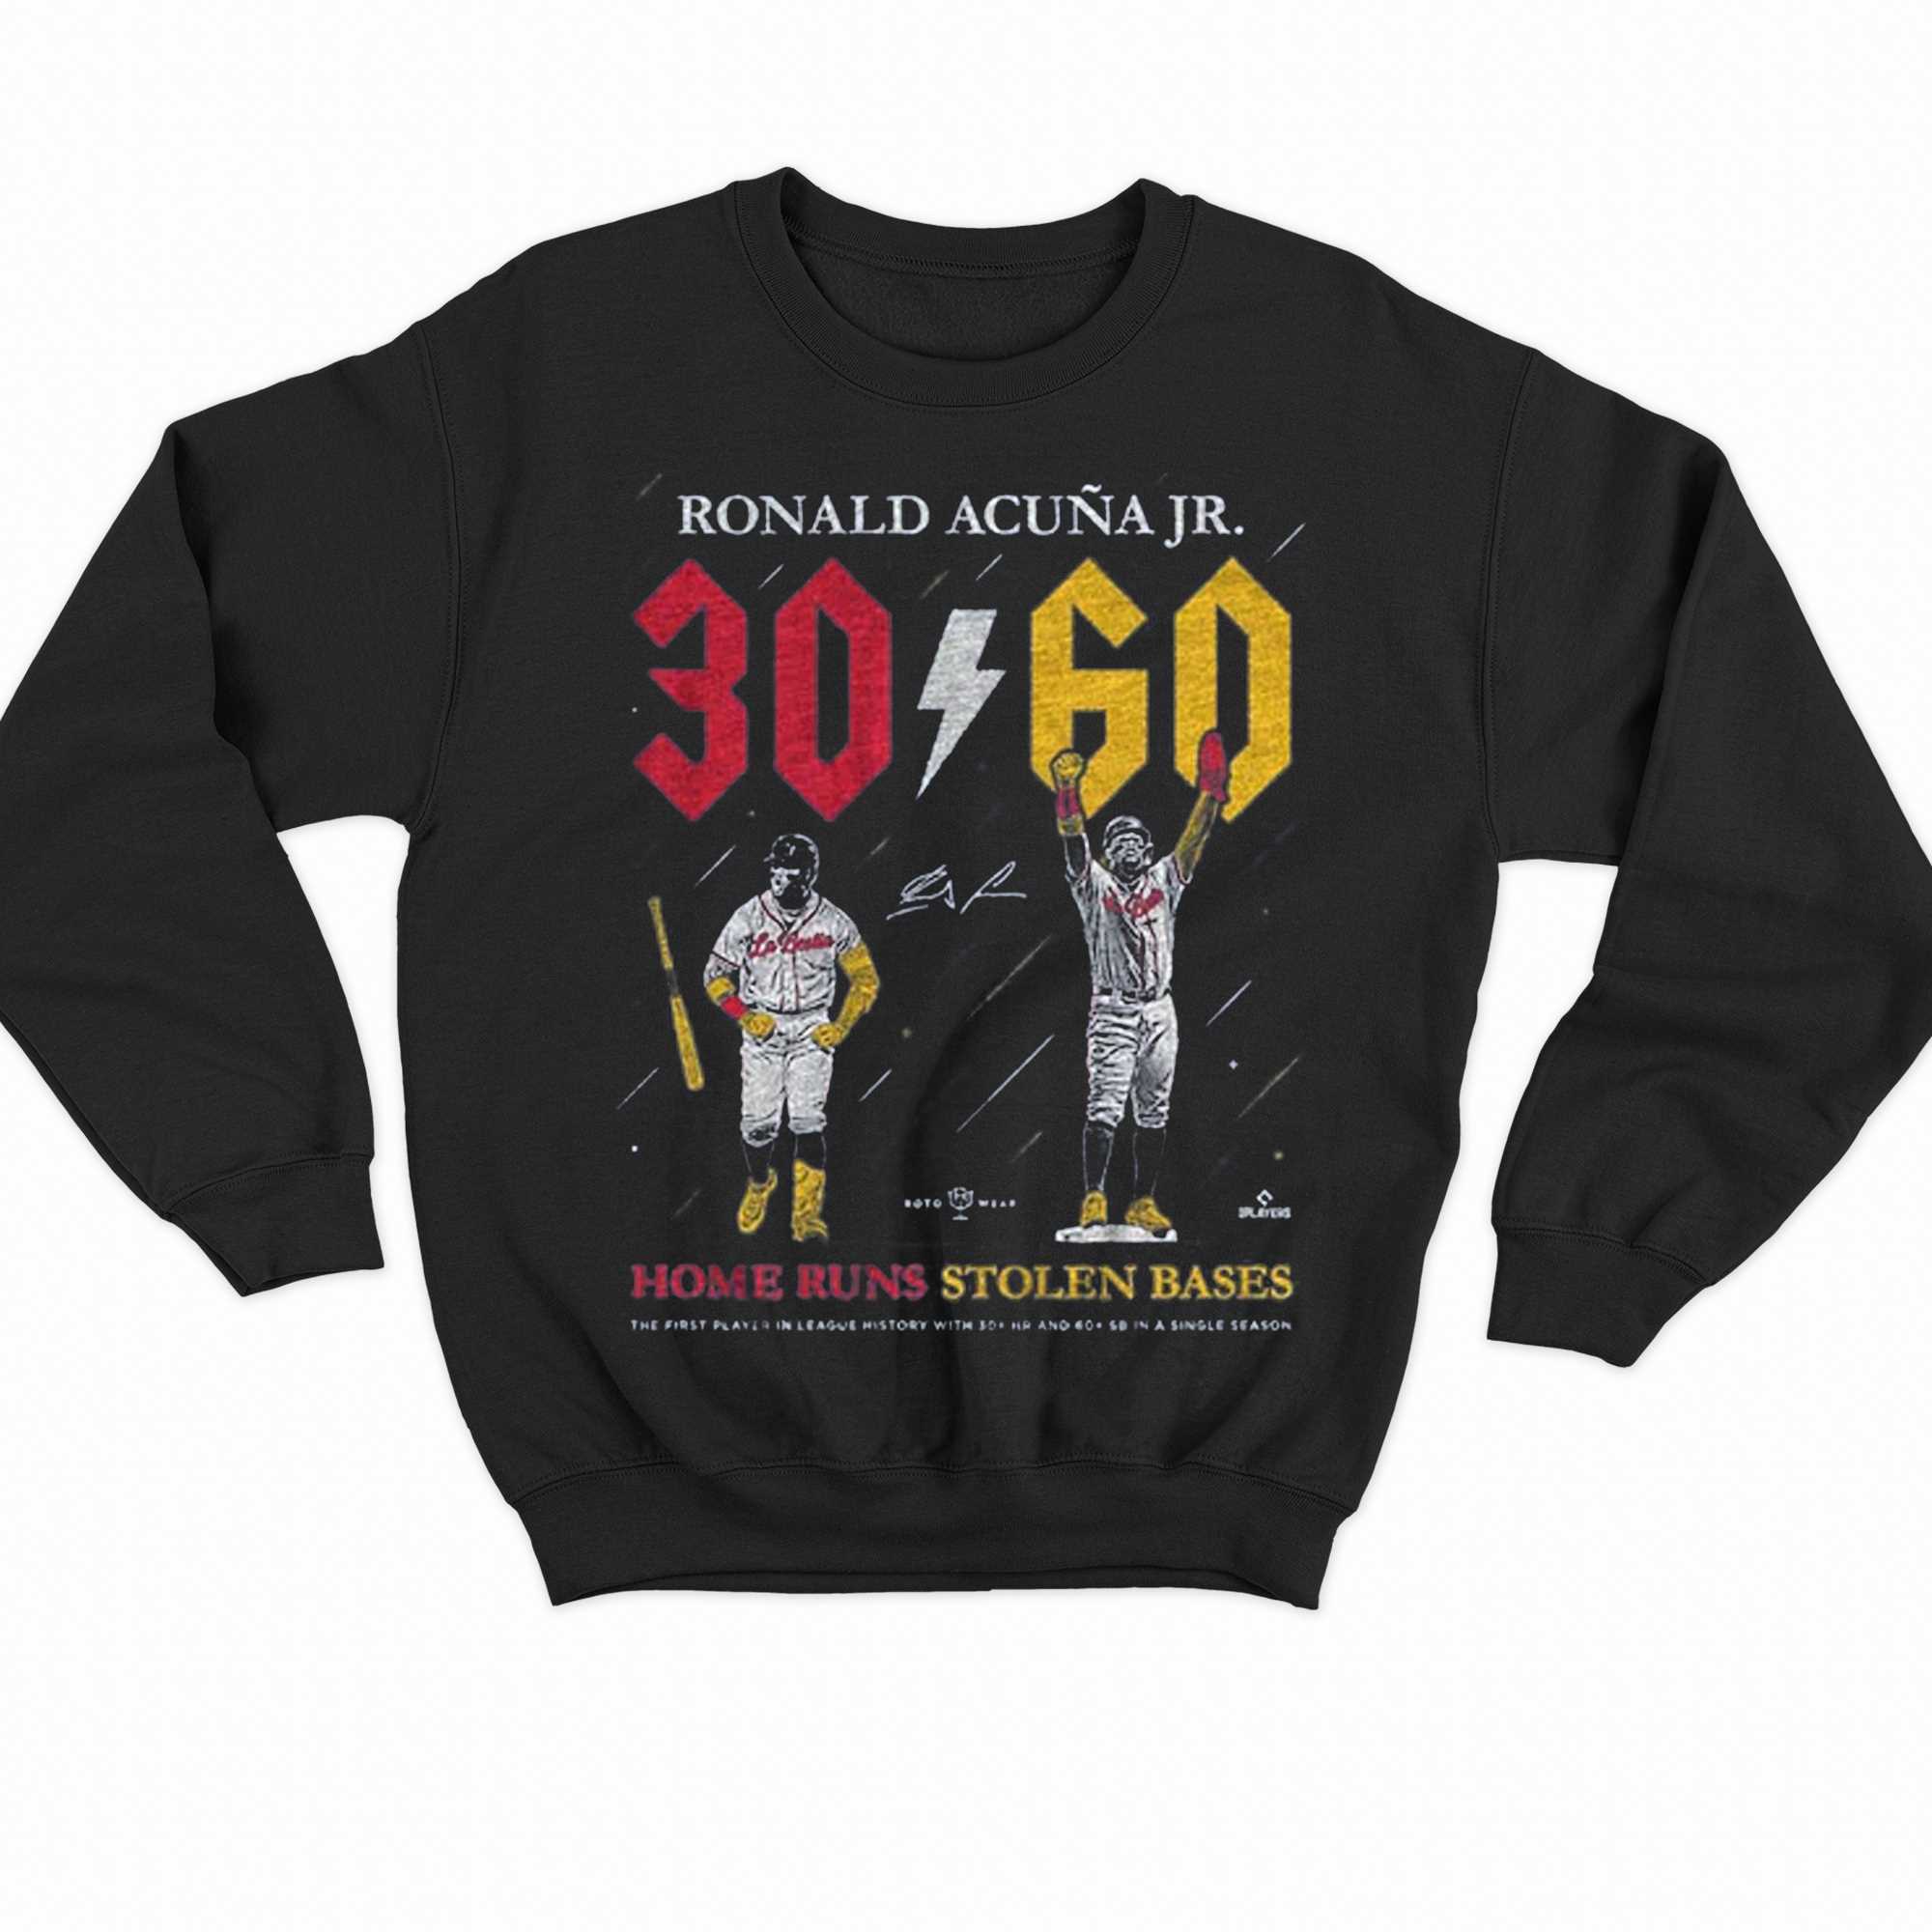 Ronald Acuna Jr 30 60 T-shirt